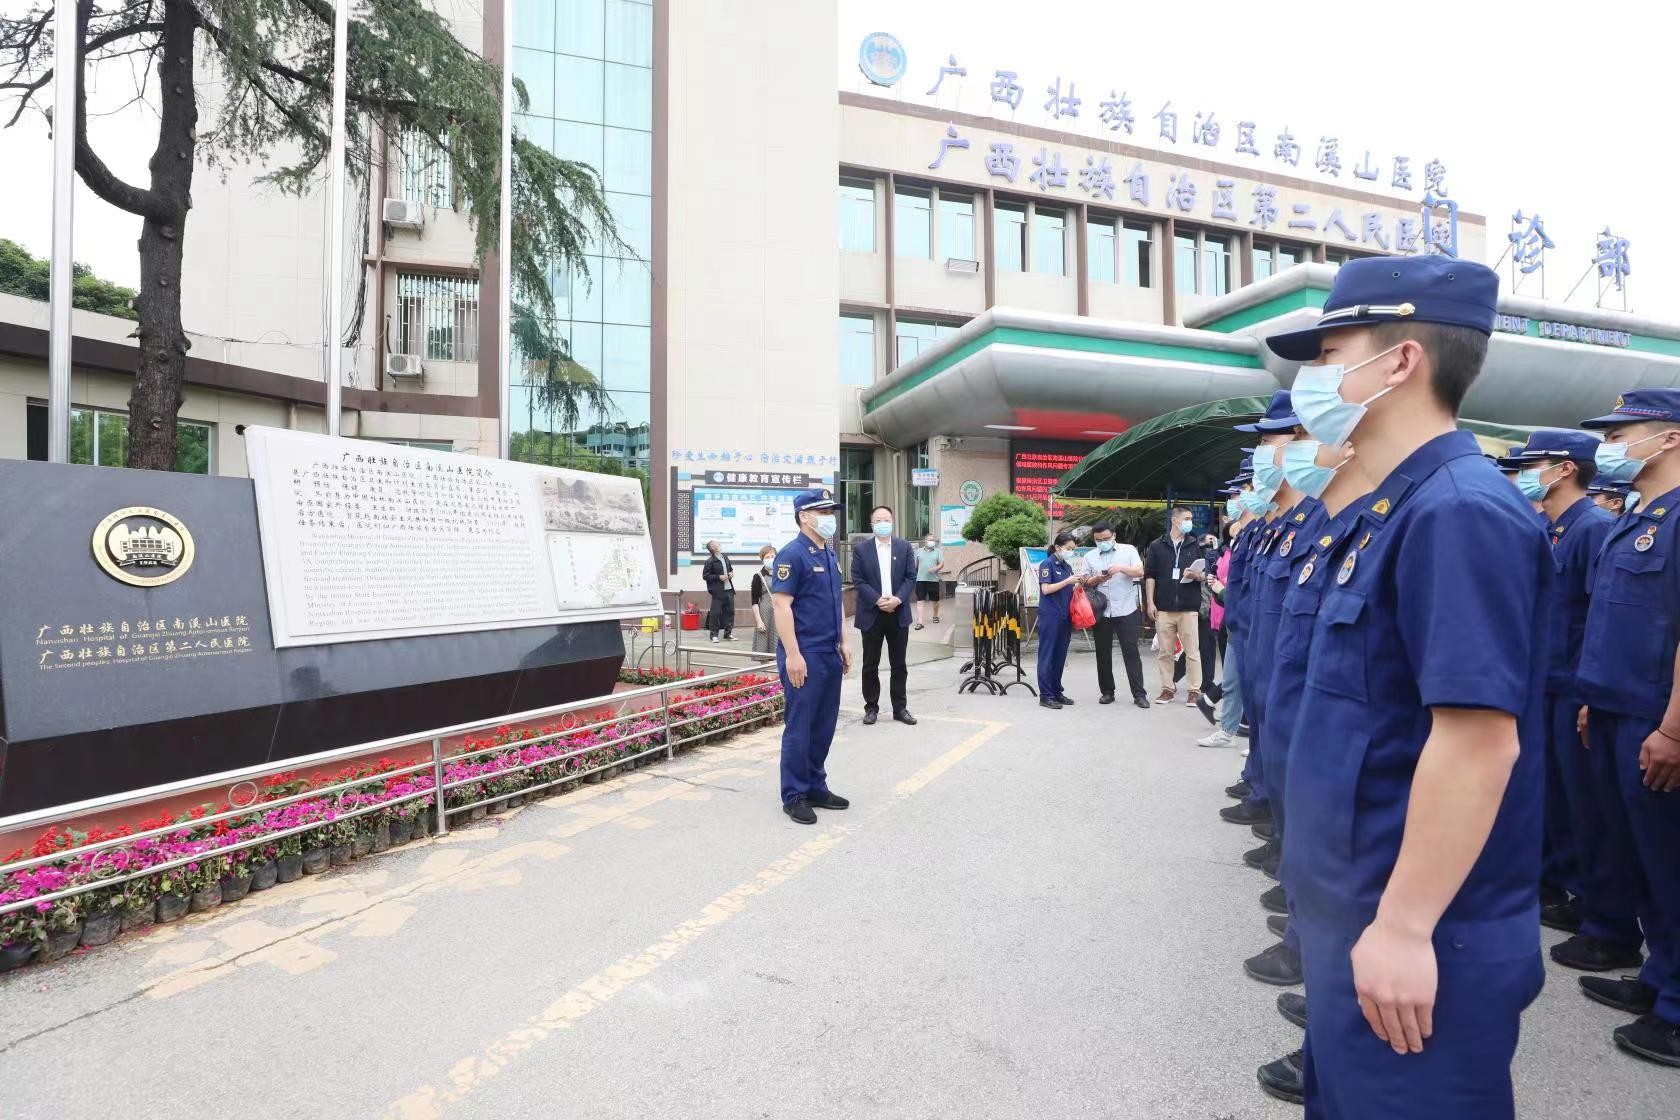 桂林市消防救援支隊54名團員青年走進南溪山醫院開展“五四”團日主題交流活動